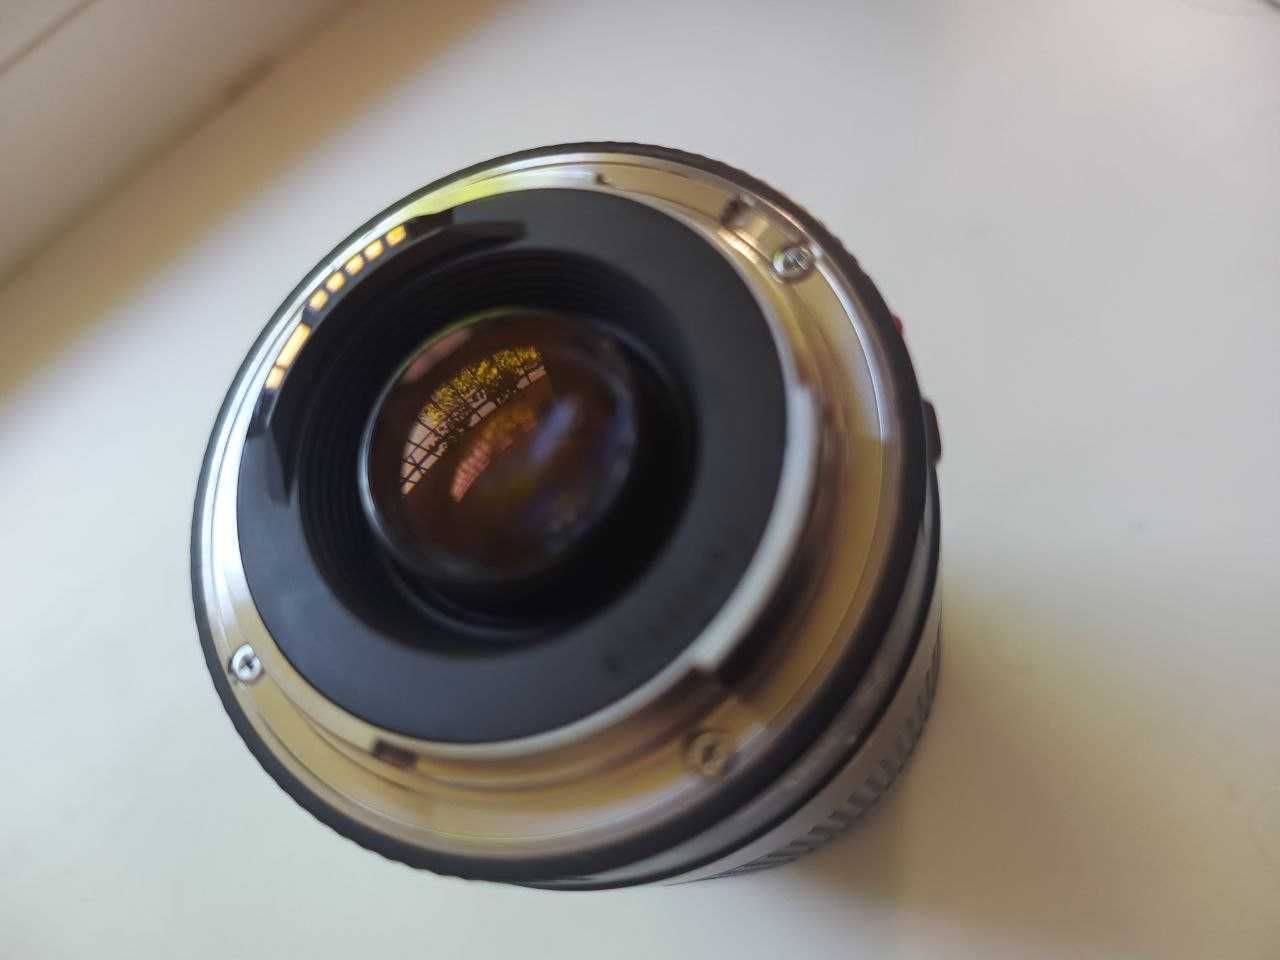 Об'єктив Canon EF 75-300mm f/4.0-5.6 III